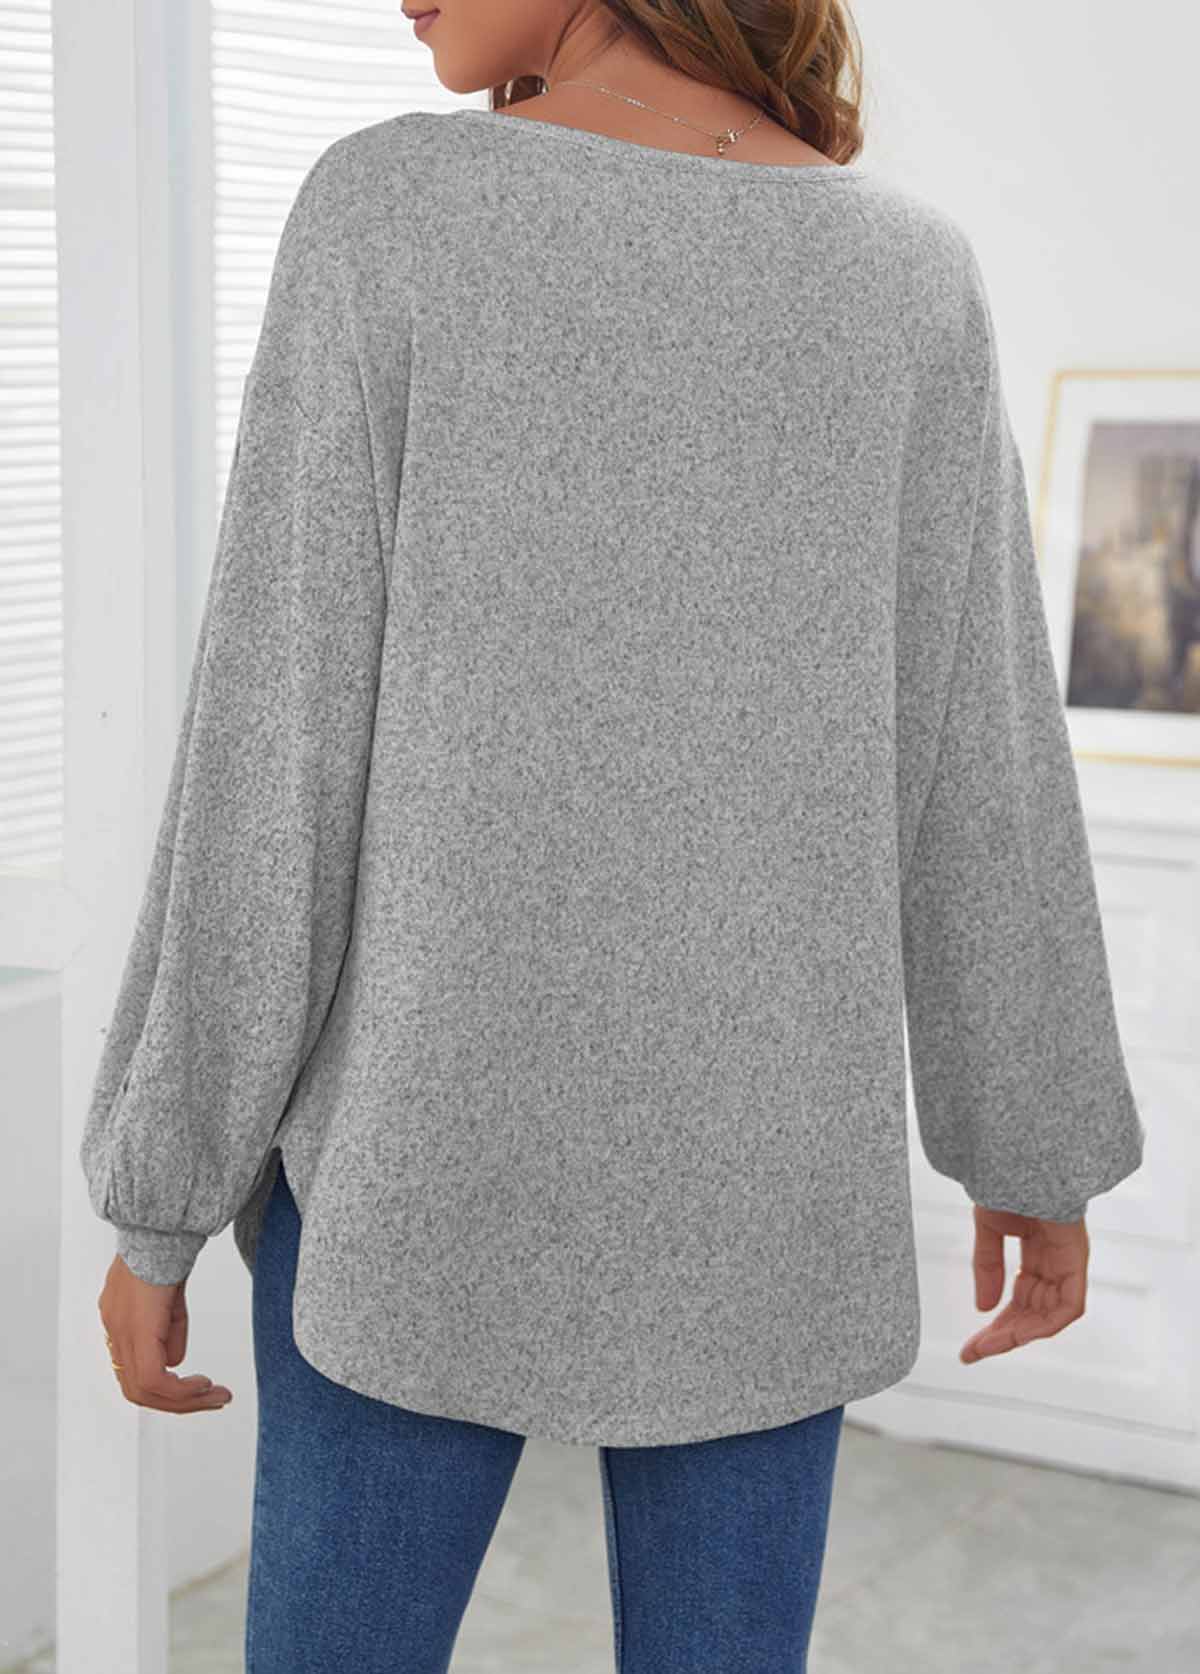 Decorative Button Long Sleeve Light Grey T Shirt